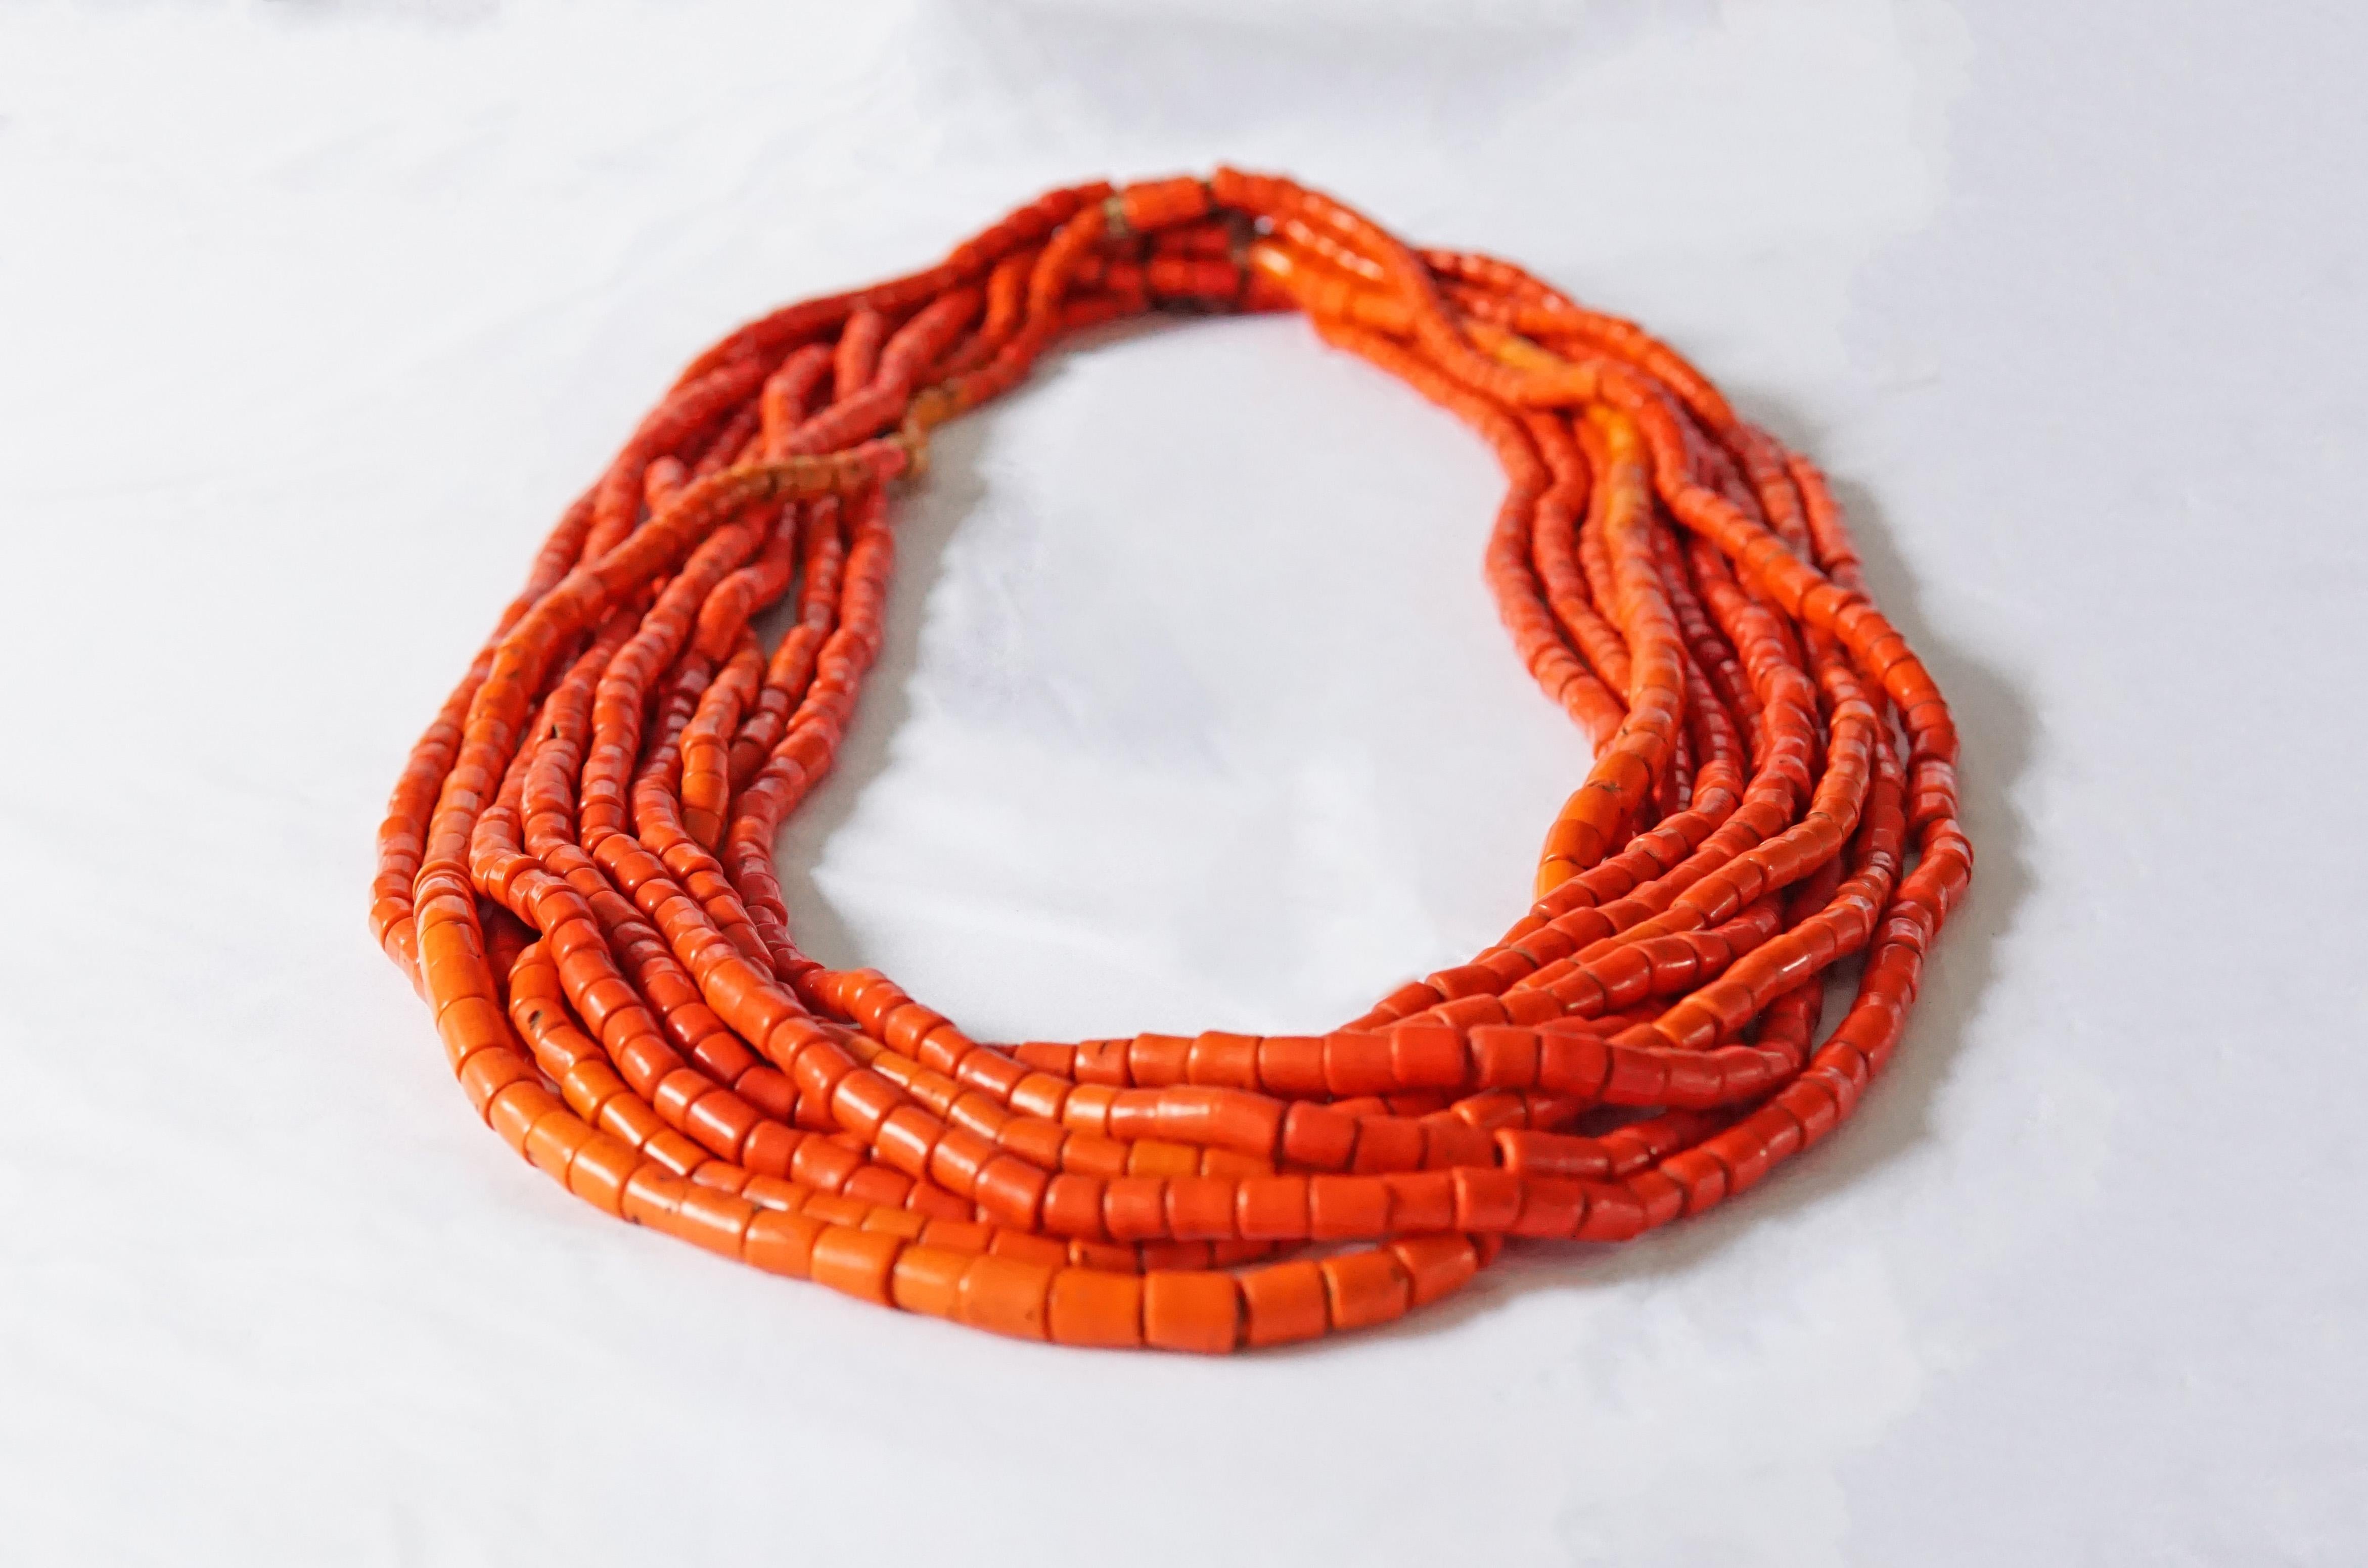 Collier à 10 brins fabriqué à la main à partir de perles Naga rouge-orange du début du 20e siècle et enfilé avec des fibres naturelles. Les colliers de ce type étaient un symbole de statut social et un élément important de la dot des femmes. Les